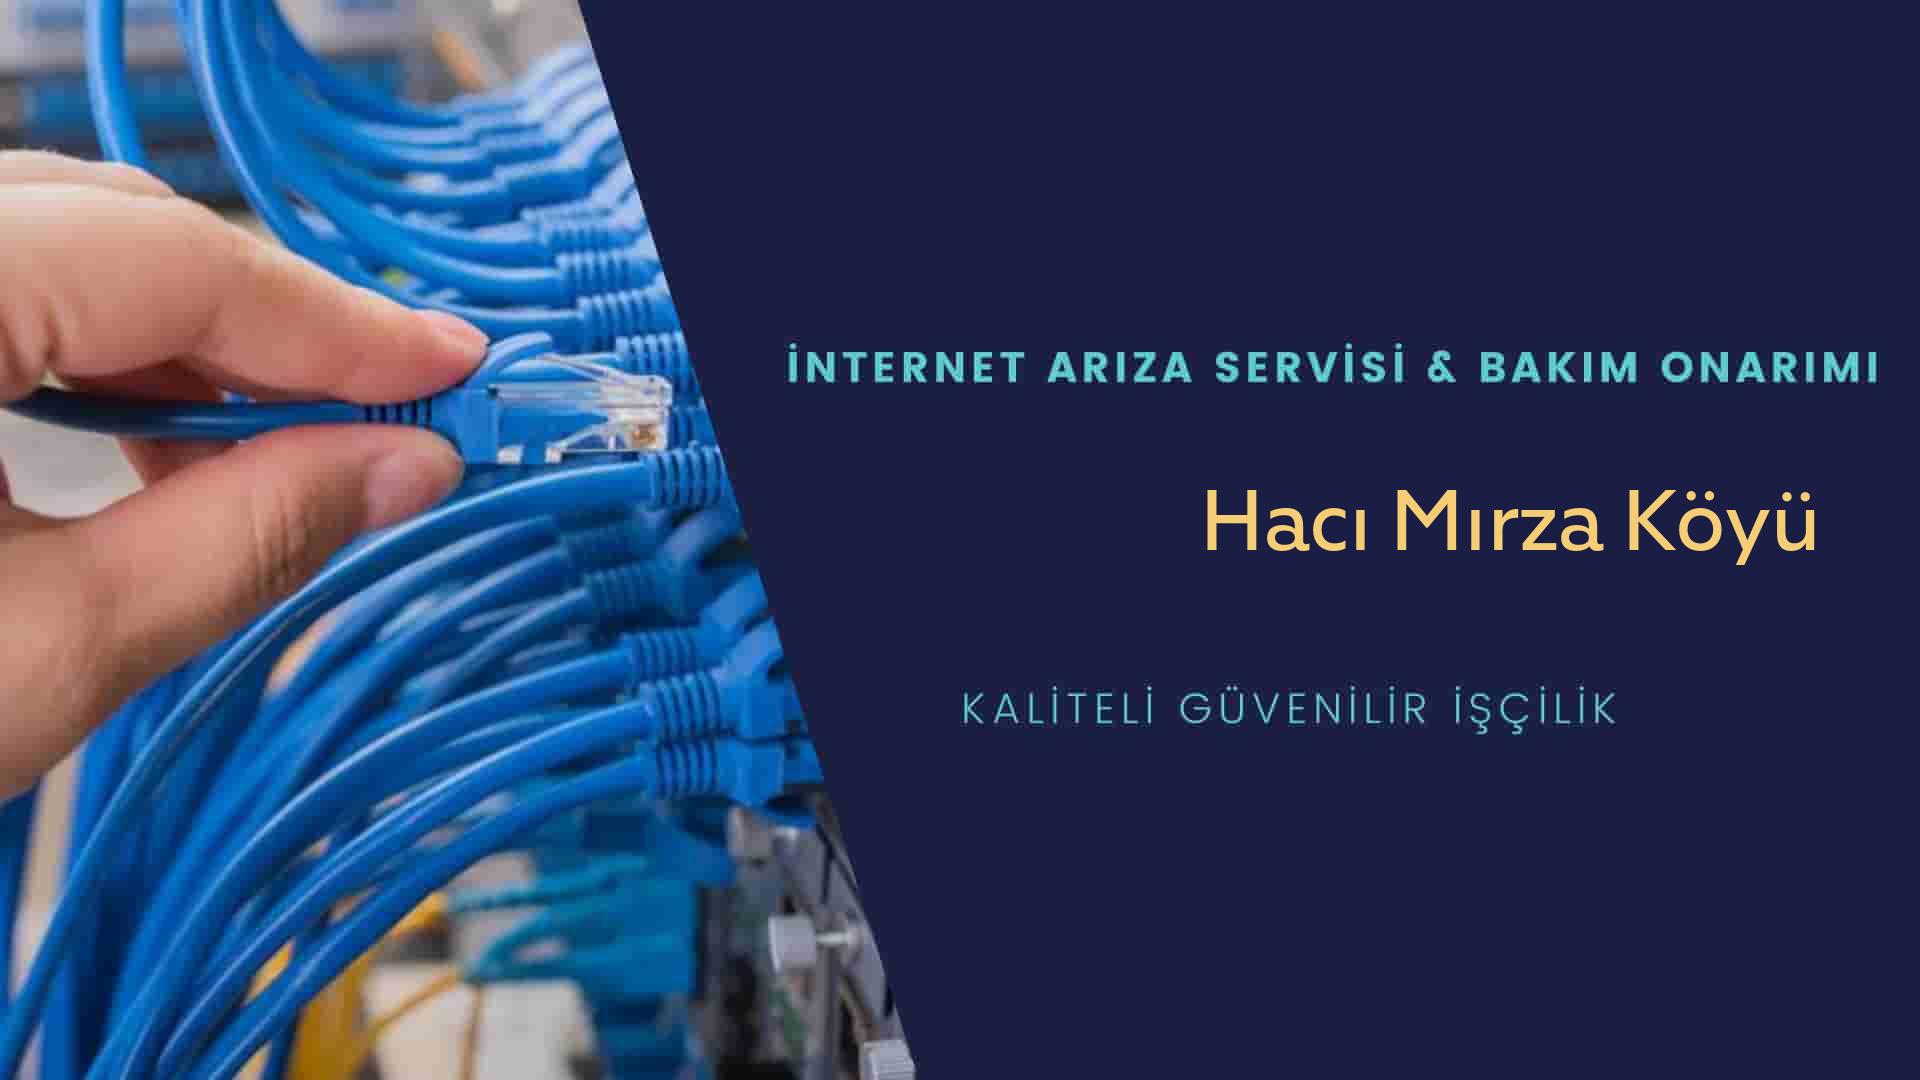 Hacı Mırza Köyü internet kablosu çekimi yapan yerler veya elektrikçiler mi? arıyorsunuz doğru yerdesiniz o zaman sizlere 7/24 yardımcı olacak profesyonel ustalarımız bir telefon kadar yakındır size.